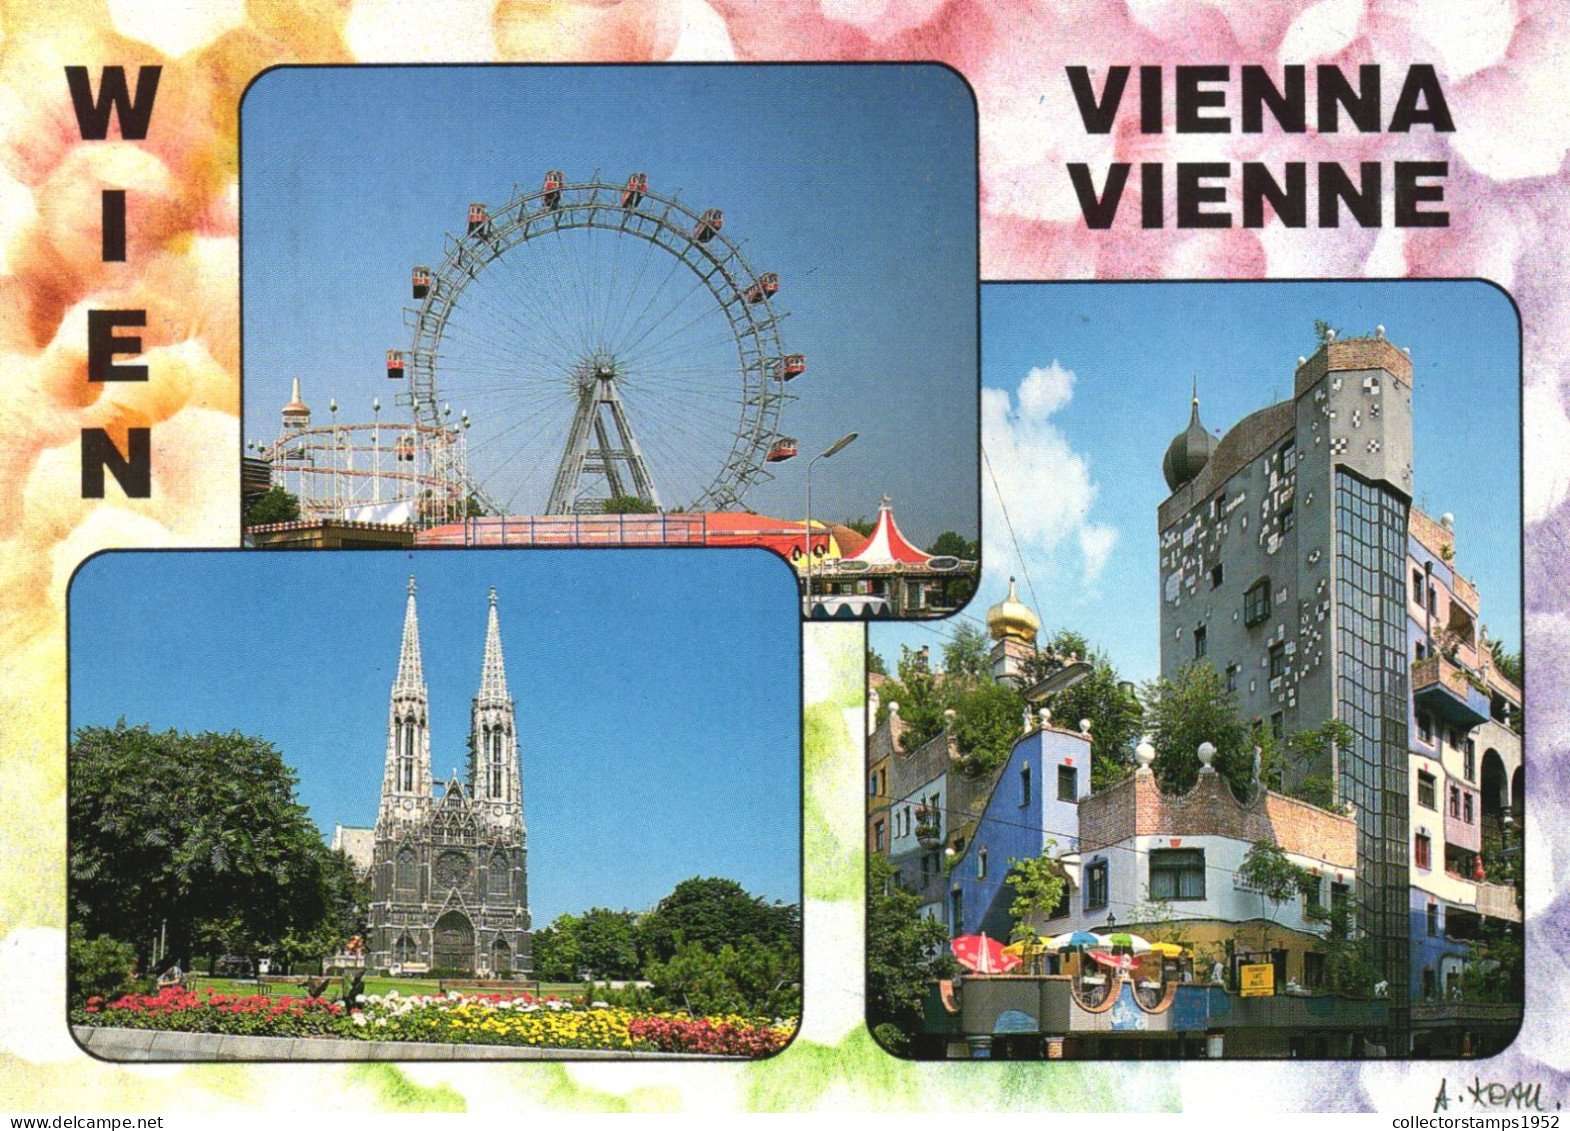 VIENNA, MULTIPLE VIEWS, GIANT WHEEL, CHURCH, PARK, ARCHITECTURE, UMBRELLA, AUSTRIA, POSTCARD - Vienna Center